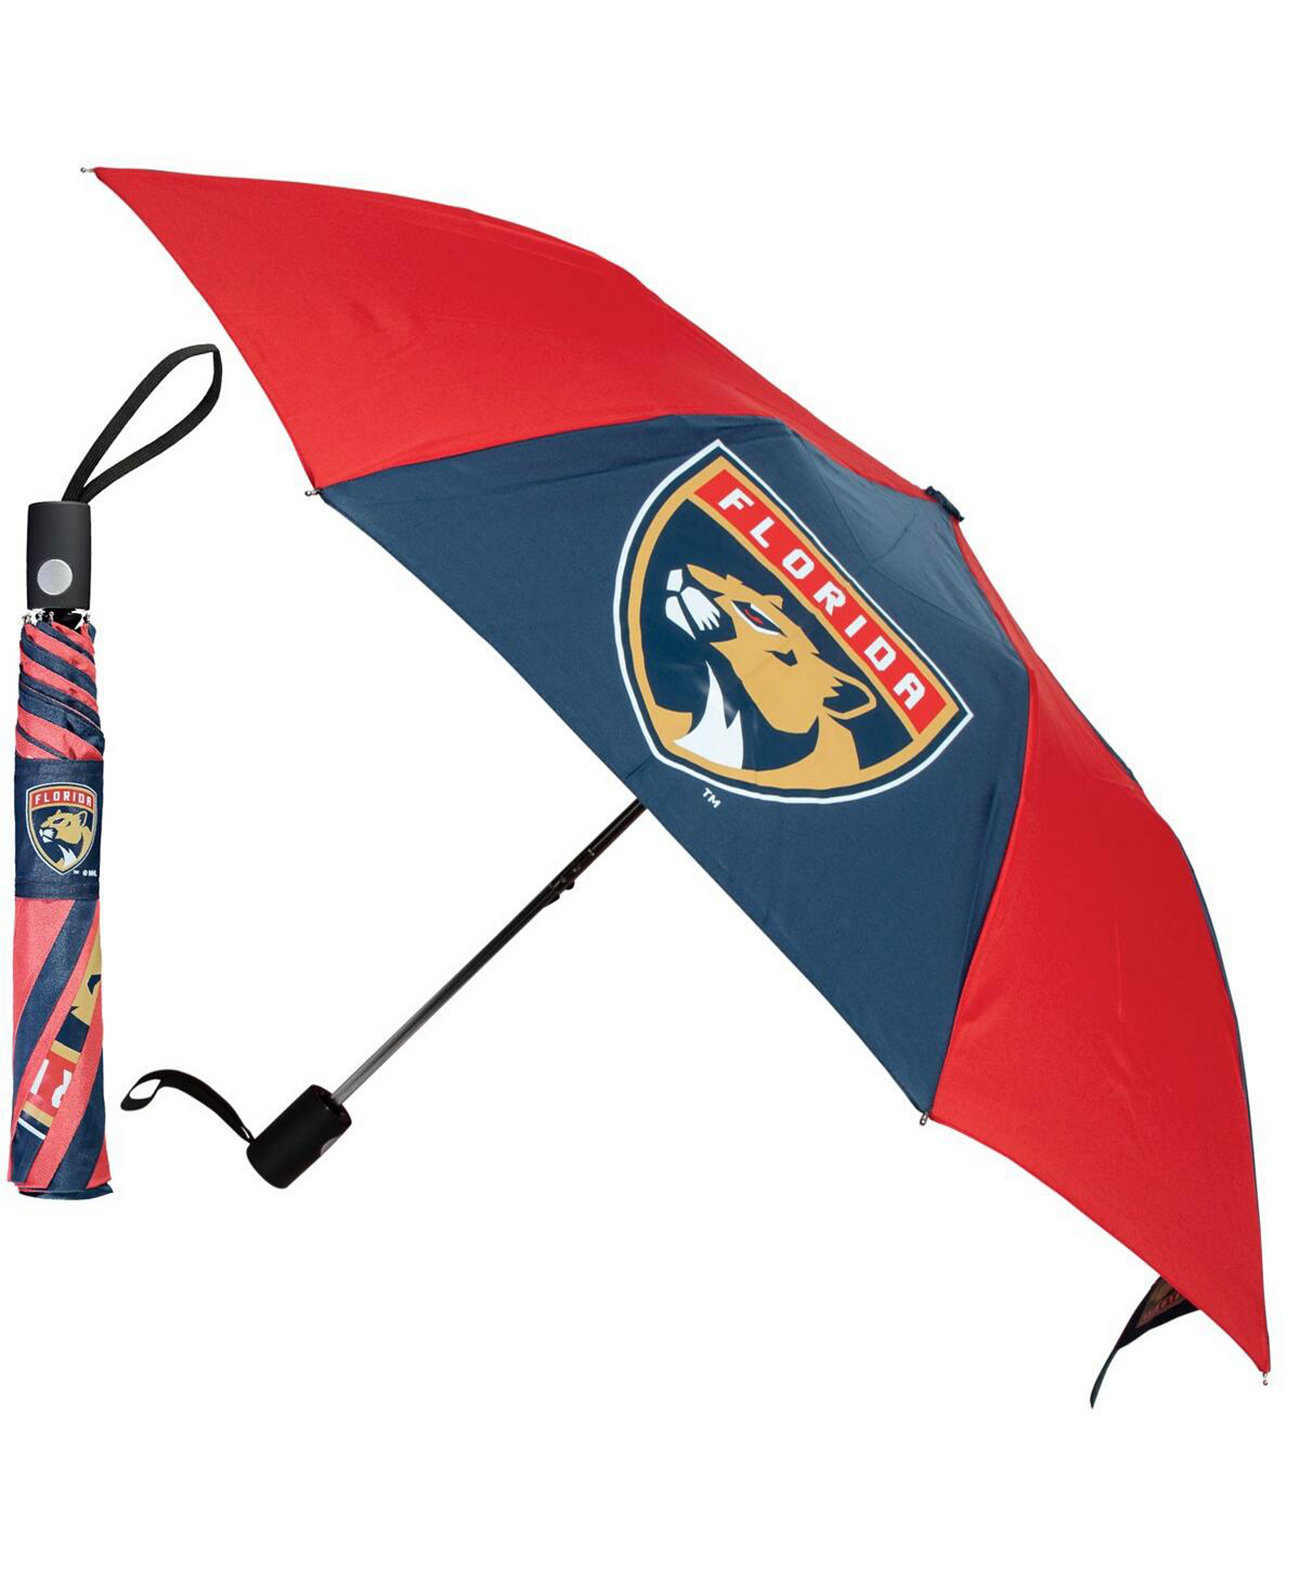 Складной зонт с основным логотипом Florida Panthers 42 дюйма Wincraft